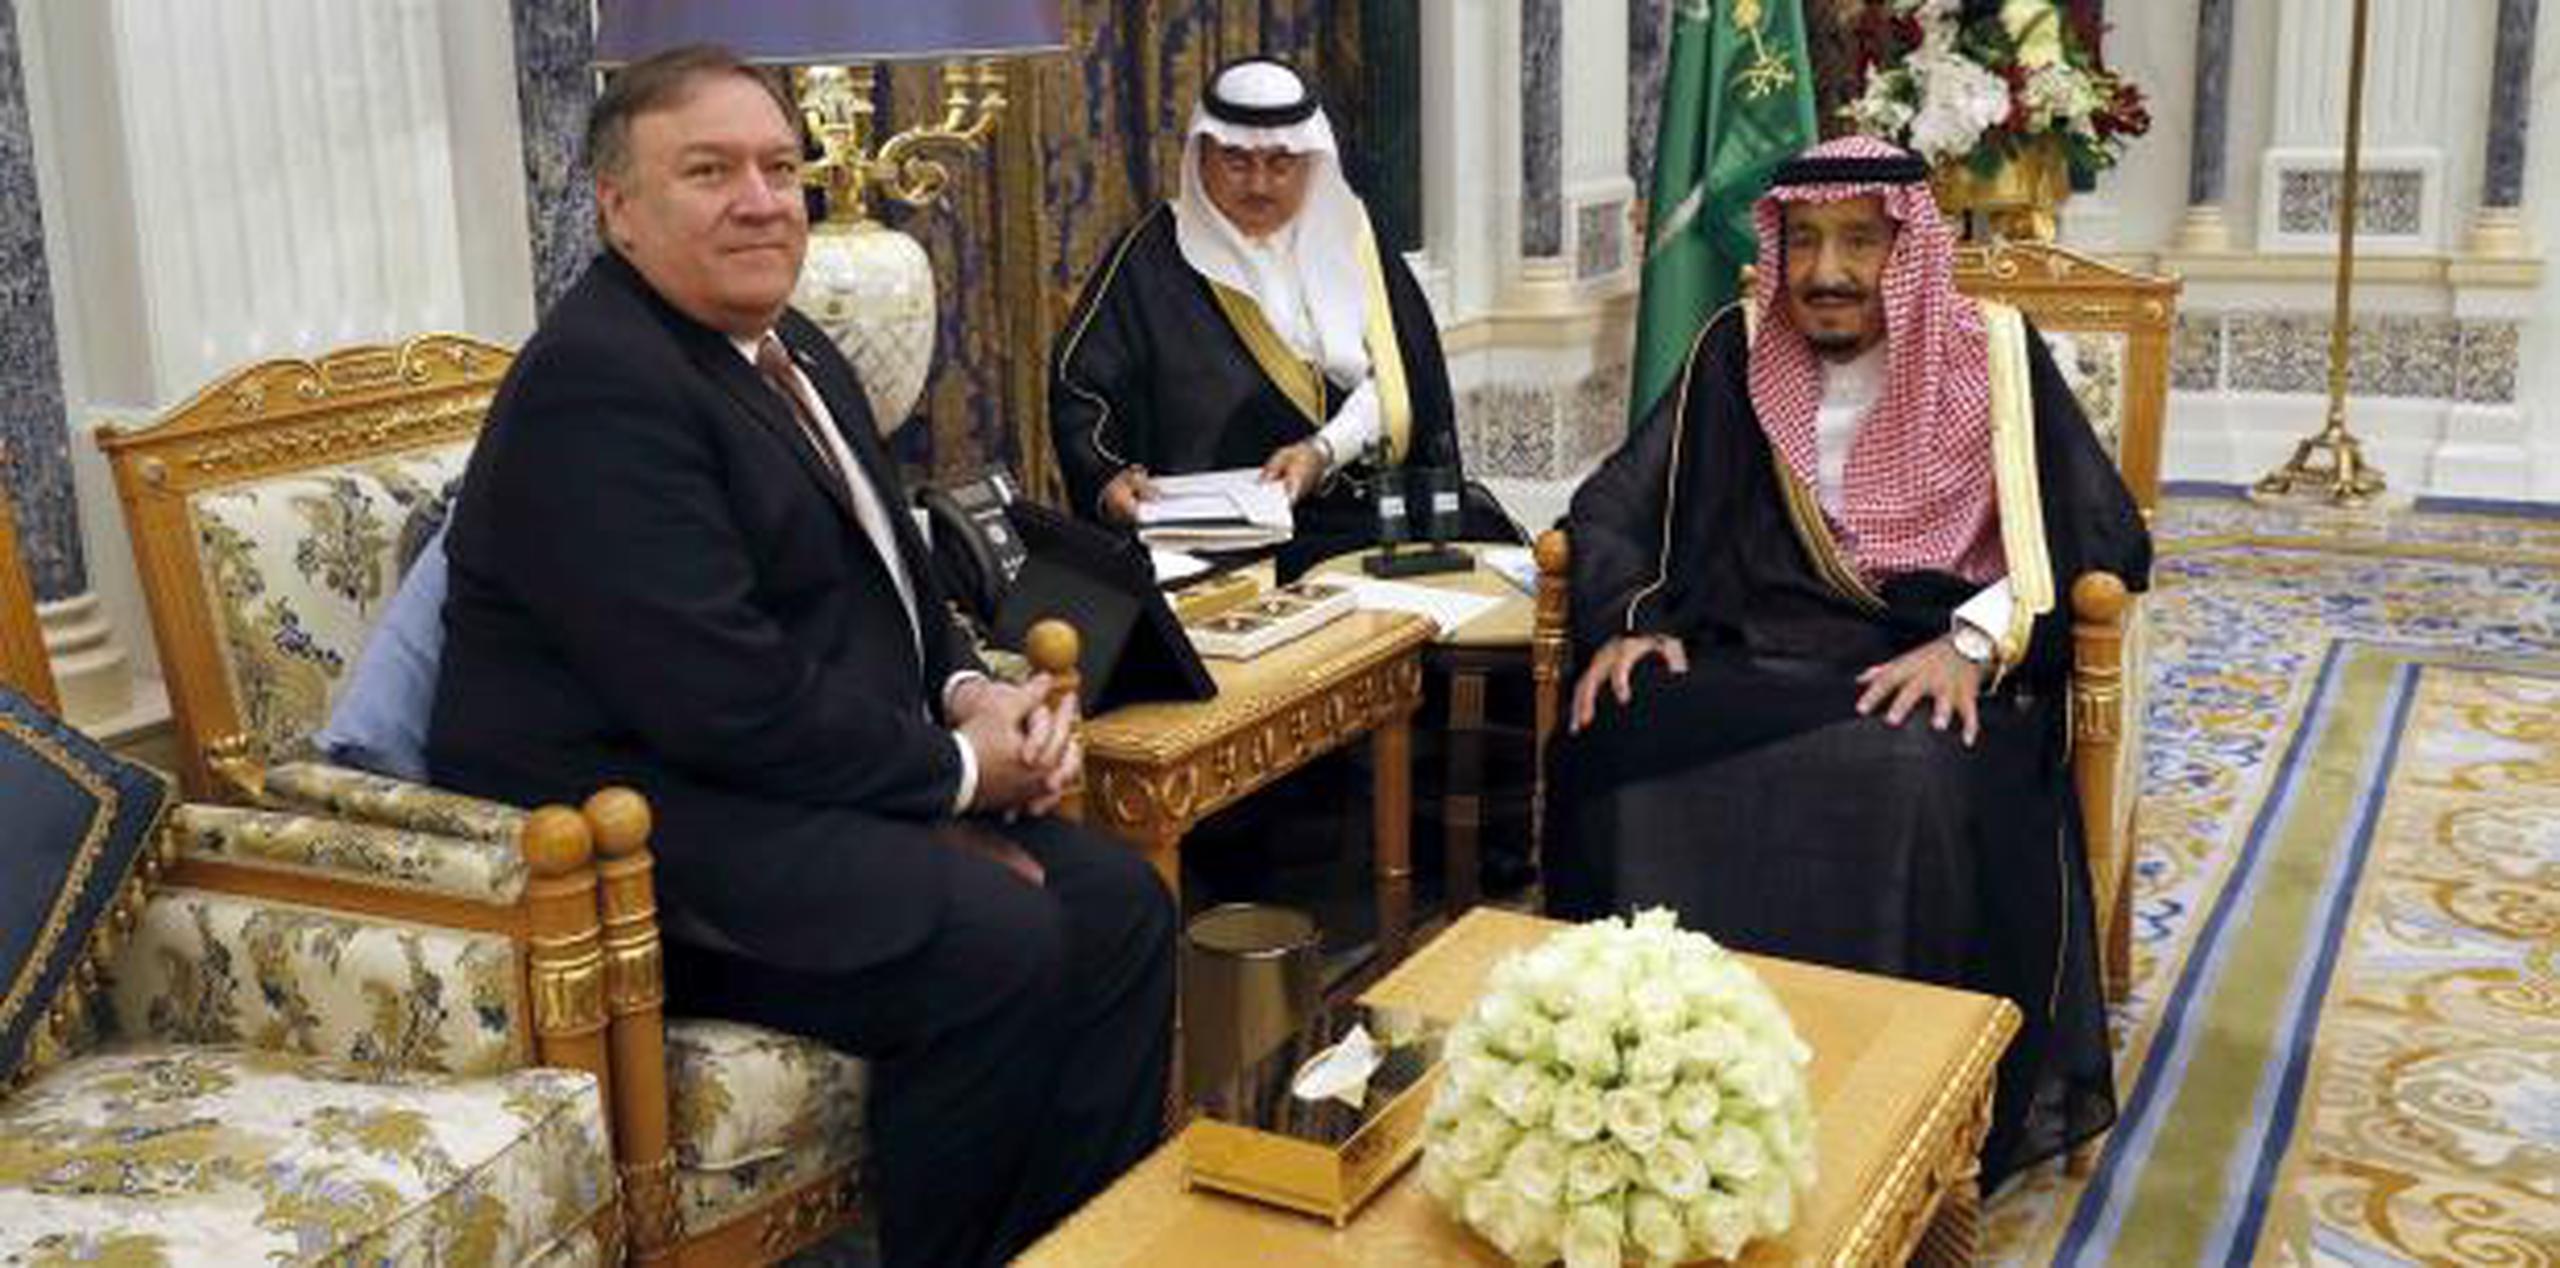 El rey Salman bin Abdulaziz Al Saud posa con el secretario de Estado, Mike Pompeo. (AP)